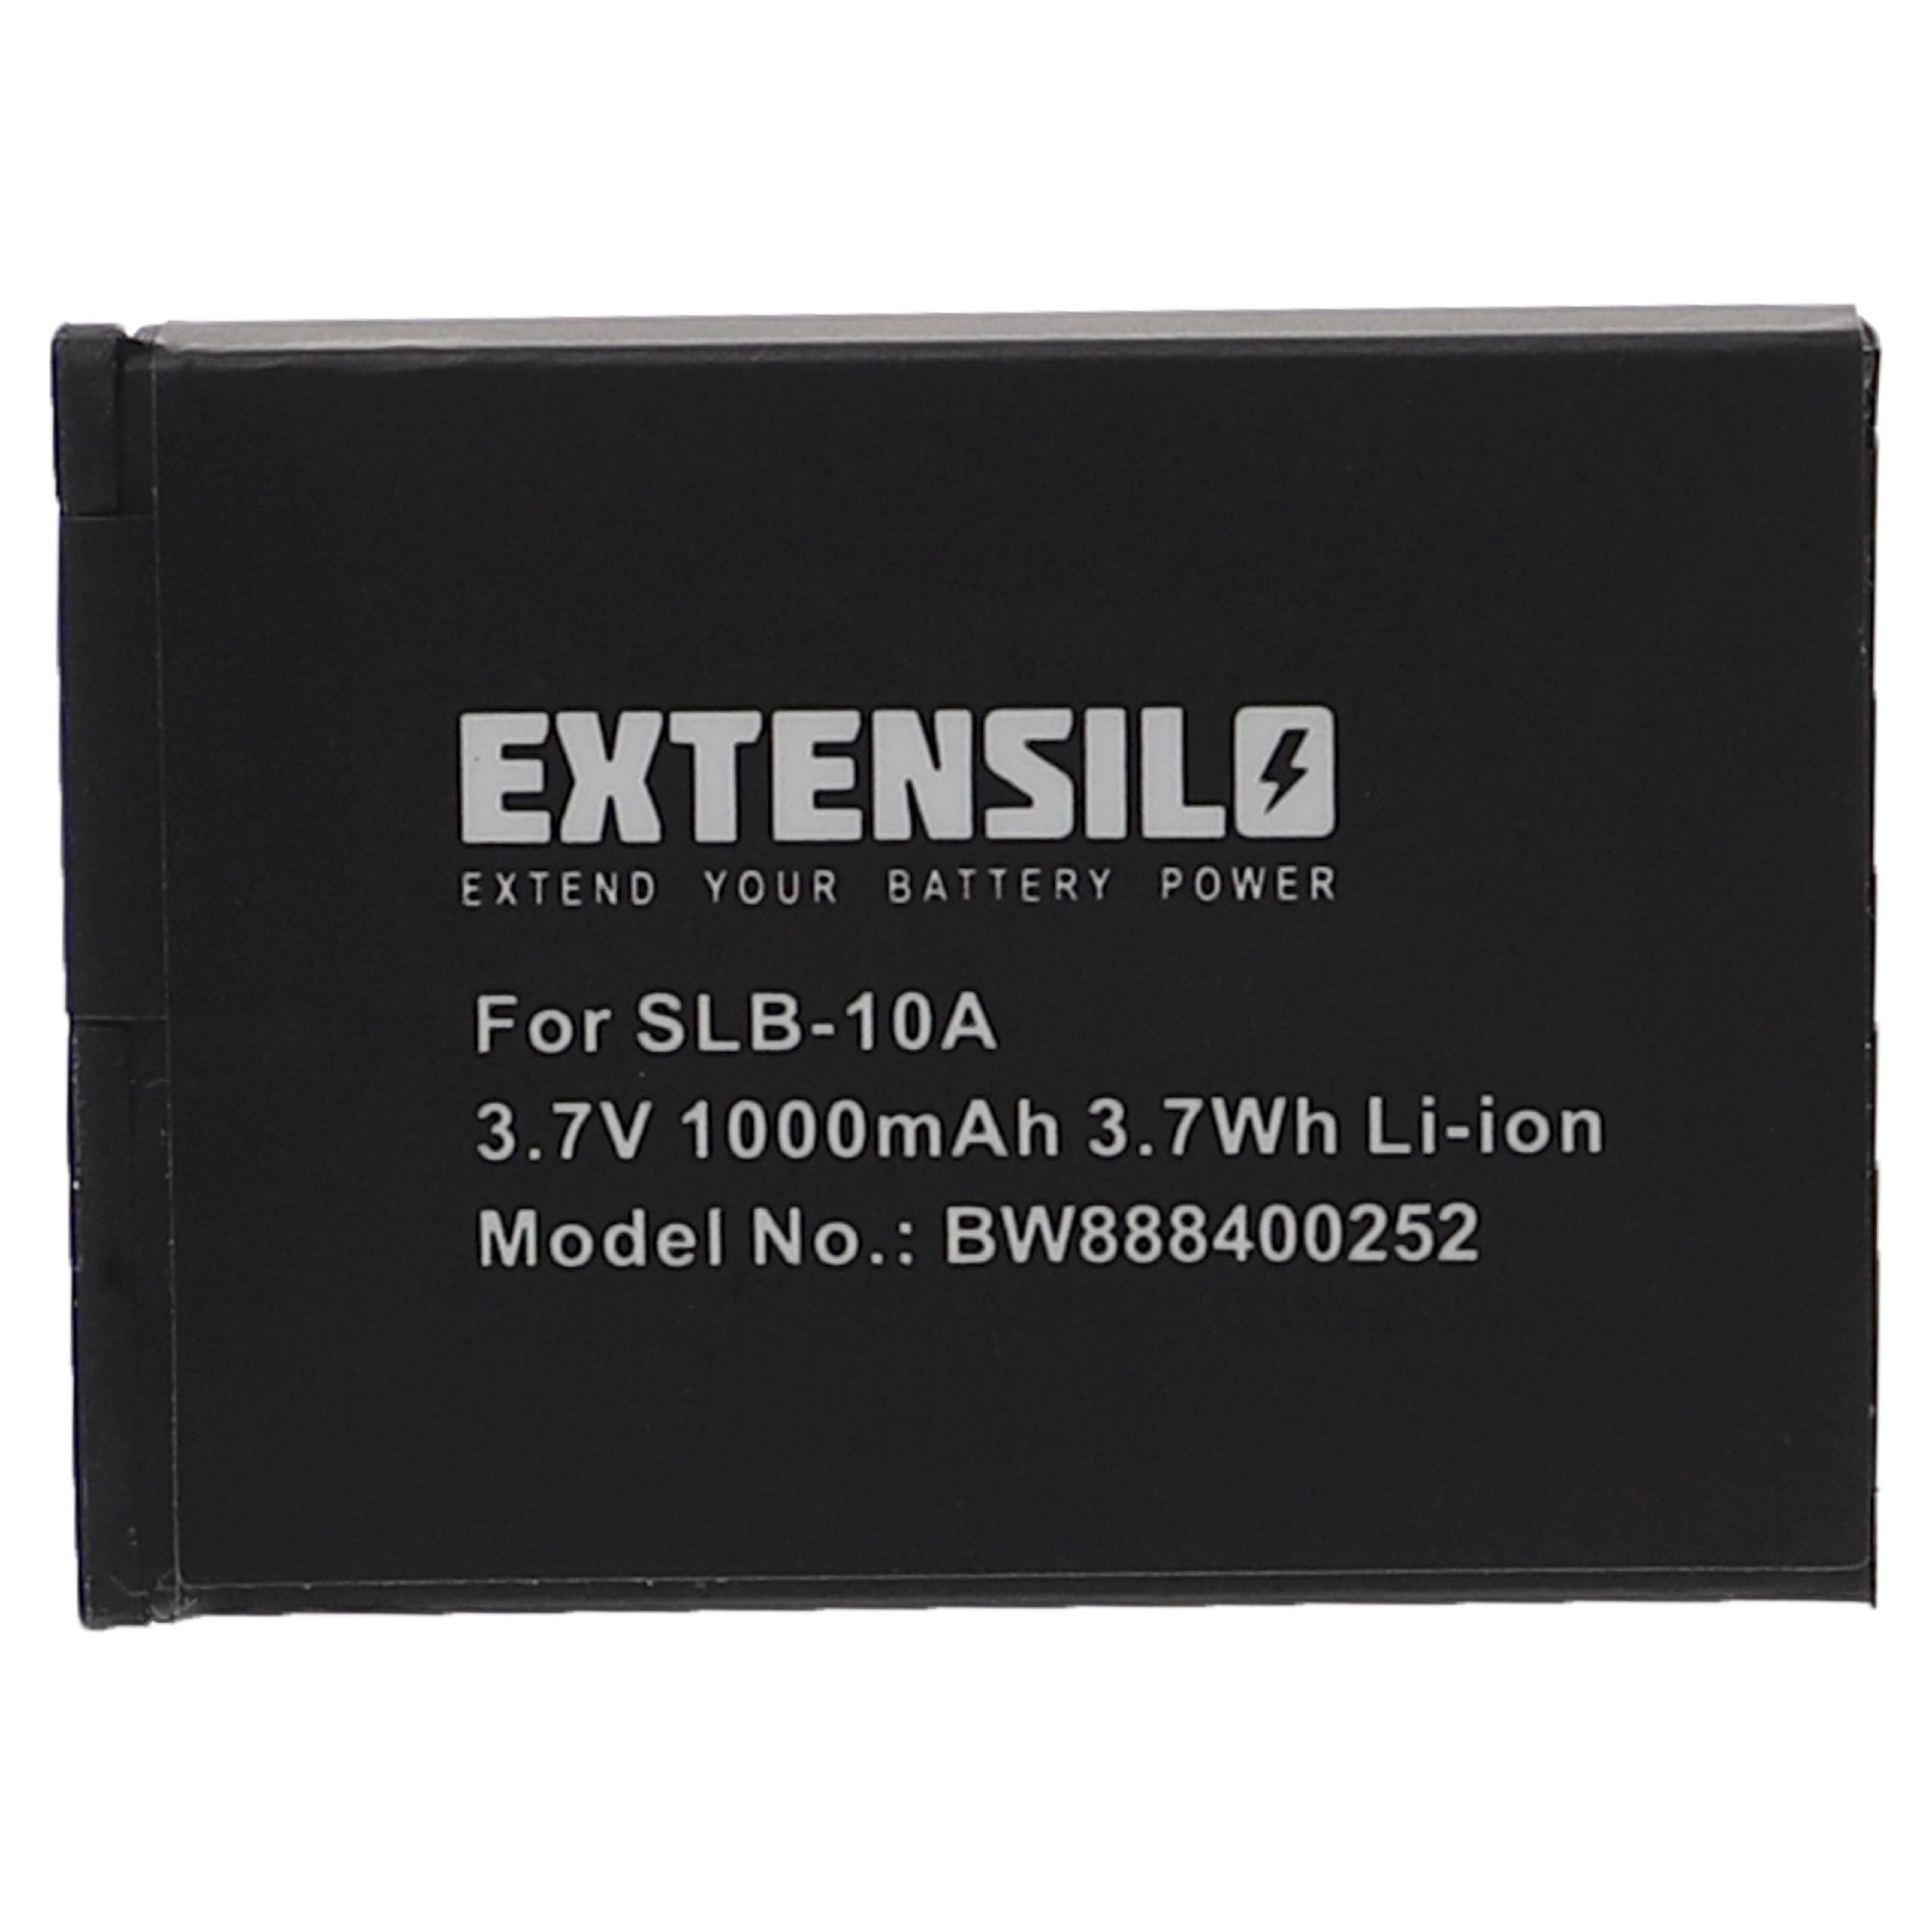 Batterie remplace Praktica FJ-SLB-10A pour appareil photo - 1000mAh 3,7V Li-ion